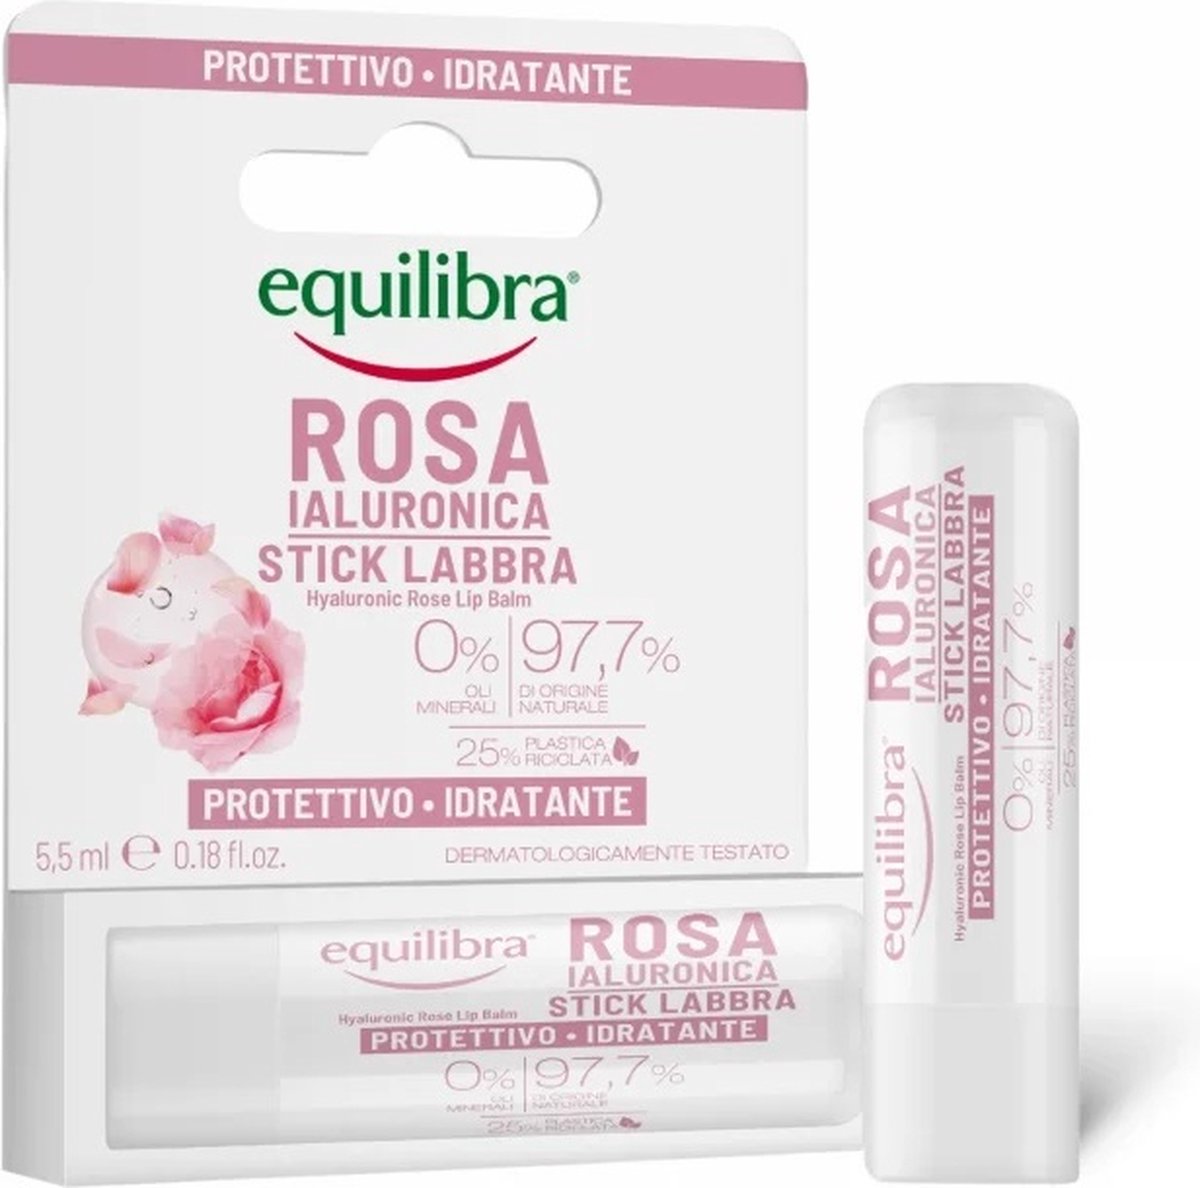 Rosa rozen lippenbalsem met hyaluronzuur 5.5ml